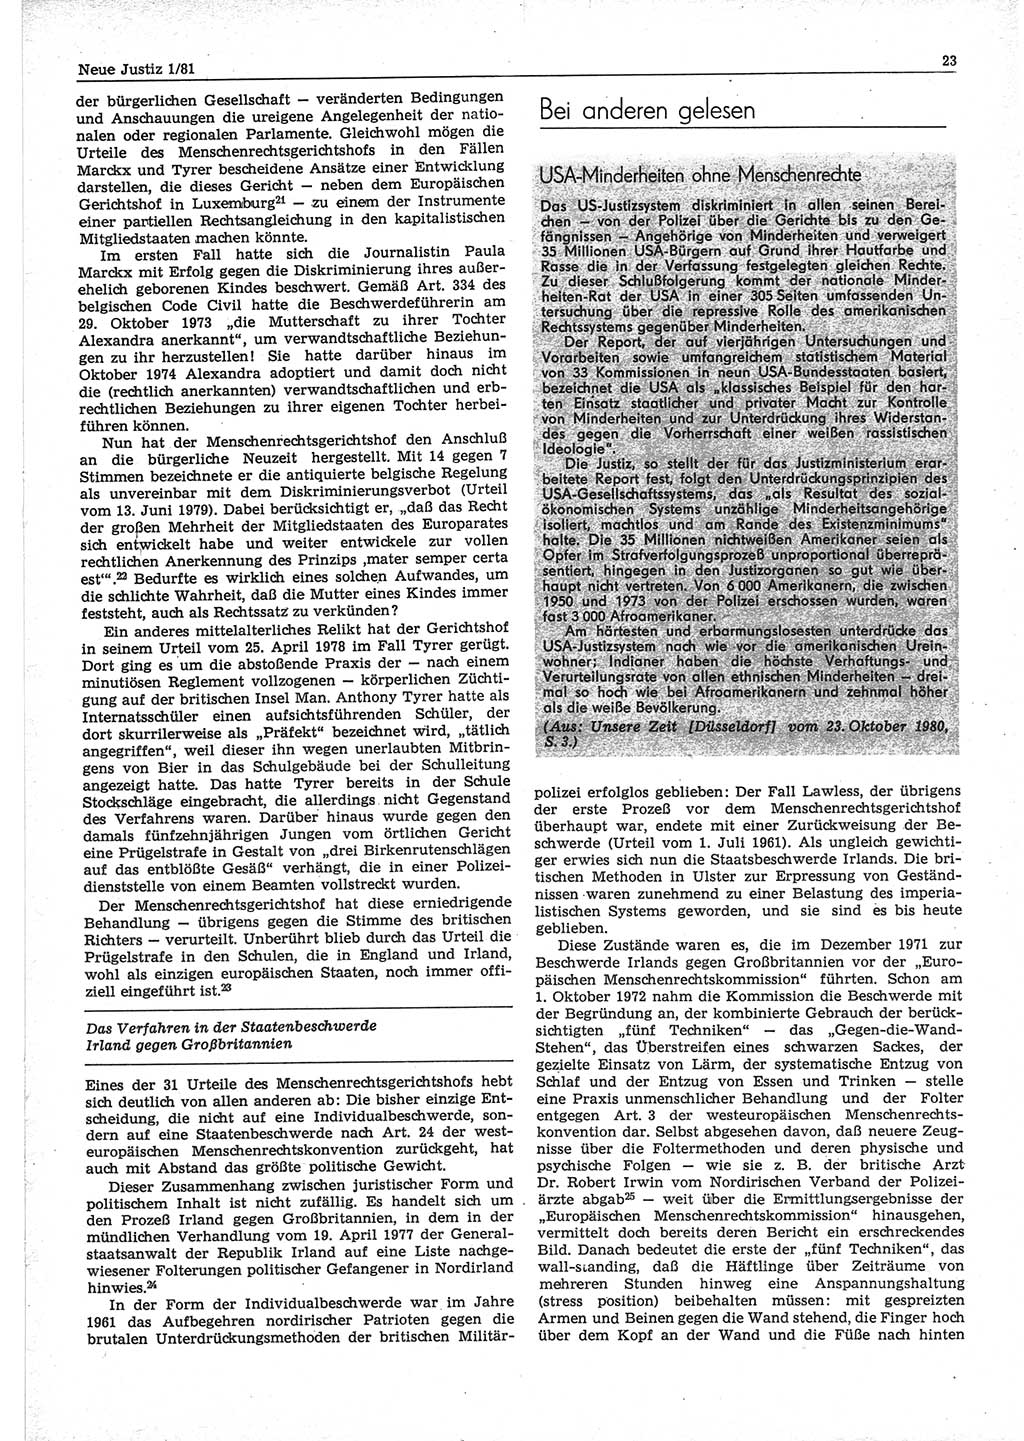 Neue Justiz (NJ), Zeitschrift für sozialistisches Recht und Gesetzlichkeit [Deutsche Demokratische Republik (DDR)], 35. Jahrgang 1981, Seite 23 (NJ DDR 1981, S. 23)